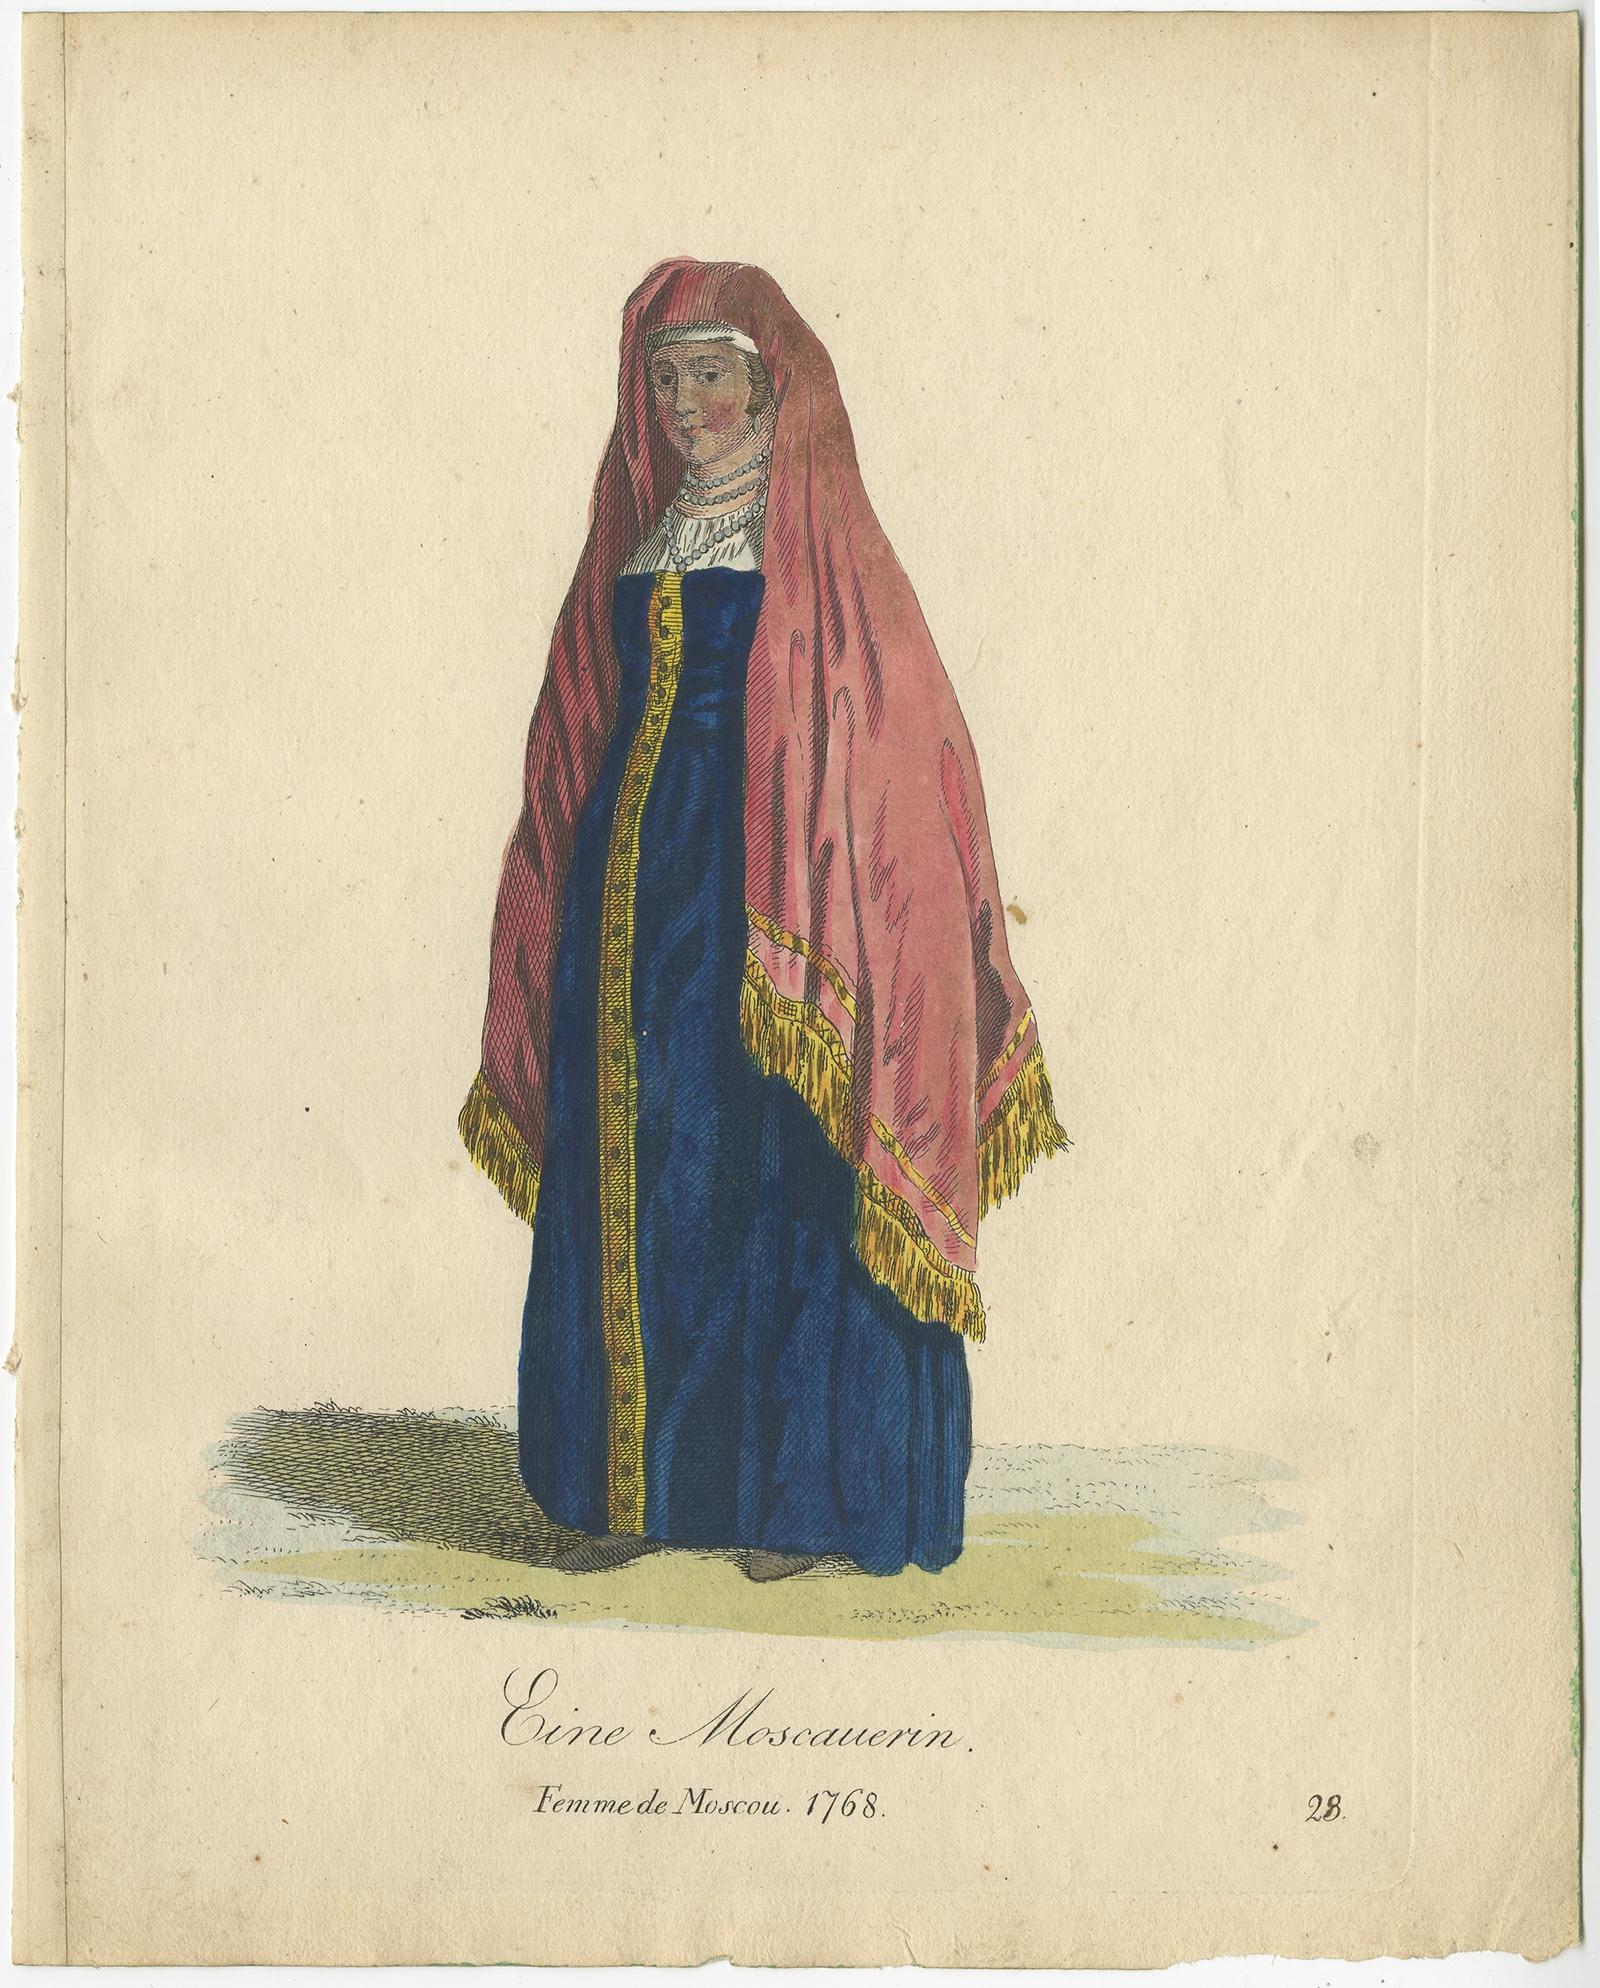 Antique costume print titled 'Eine Moscauerin - Femme de Moscou 1768'. 

This print depicts a Lady from Moscow, Russia. Originates from a rare costume book titled 'Sammlung von Trachten bey verschiedenen ältern und neuern Völkern (..)'.